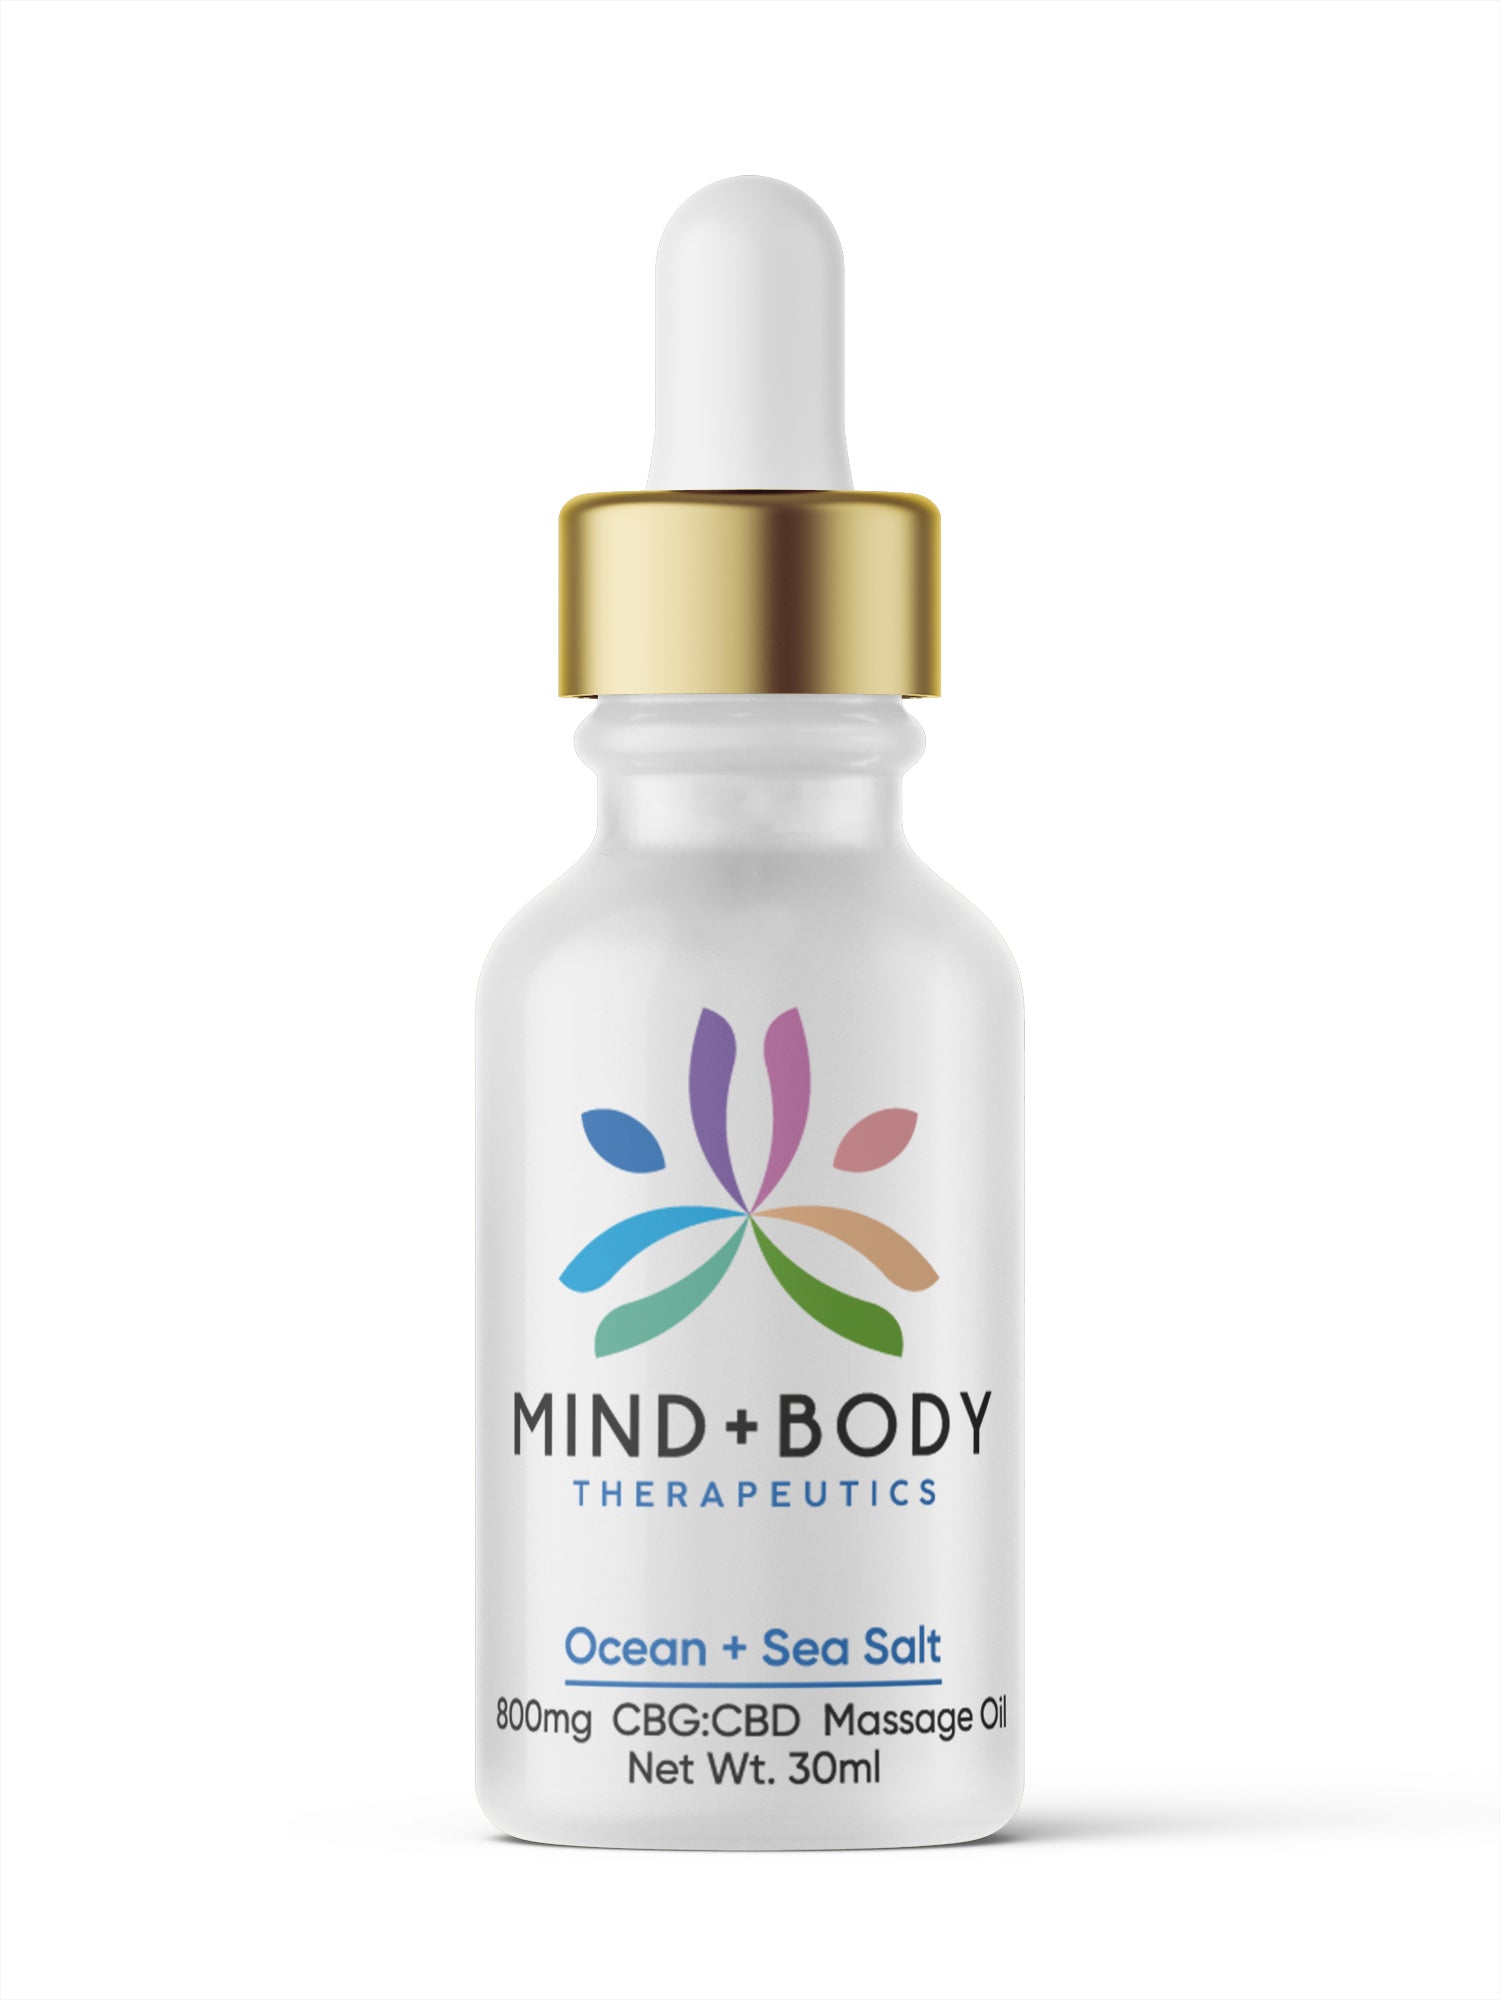 Mind+Body Therapeutics CBG:CBD 800mg Massage Oil 30ml - Ocean + Sea Salt - Unit